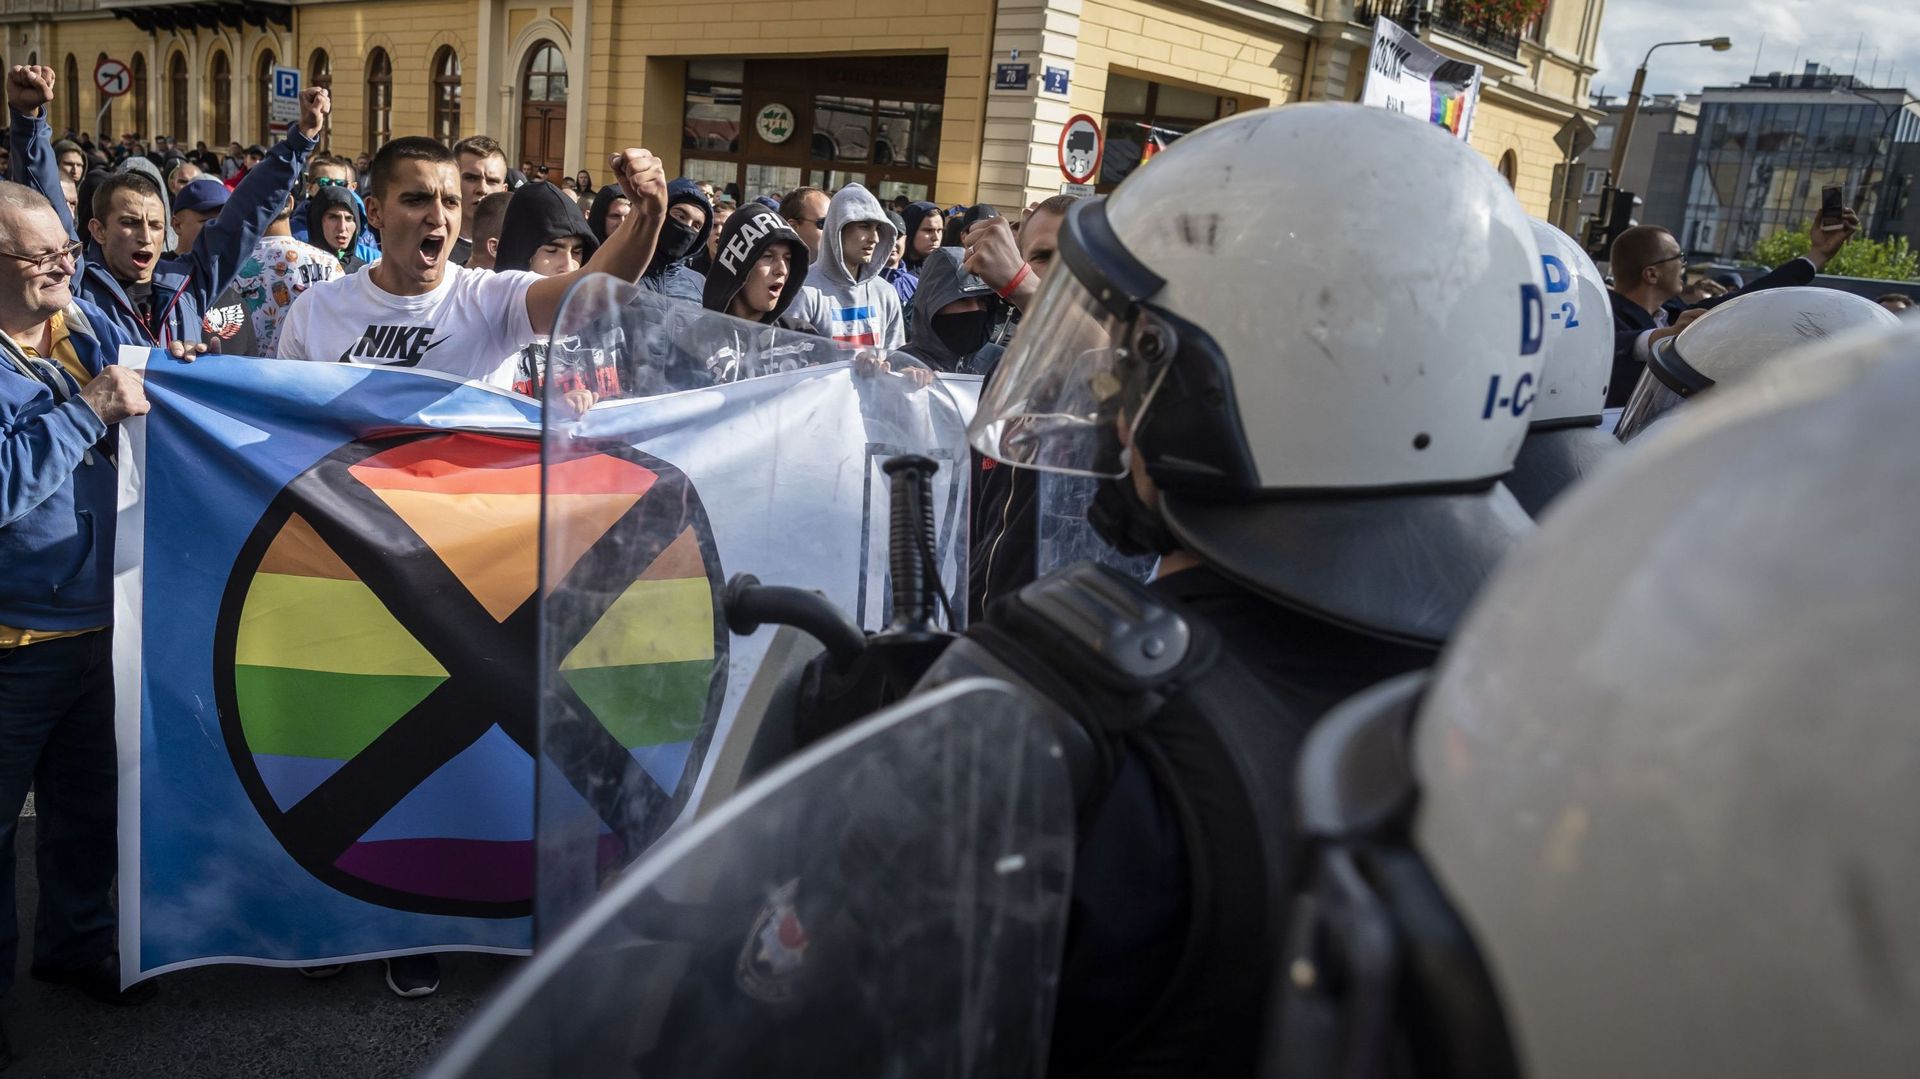 L’Union européenne adopte une résolution contre les « zones sans LGBTI » en Pologne